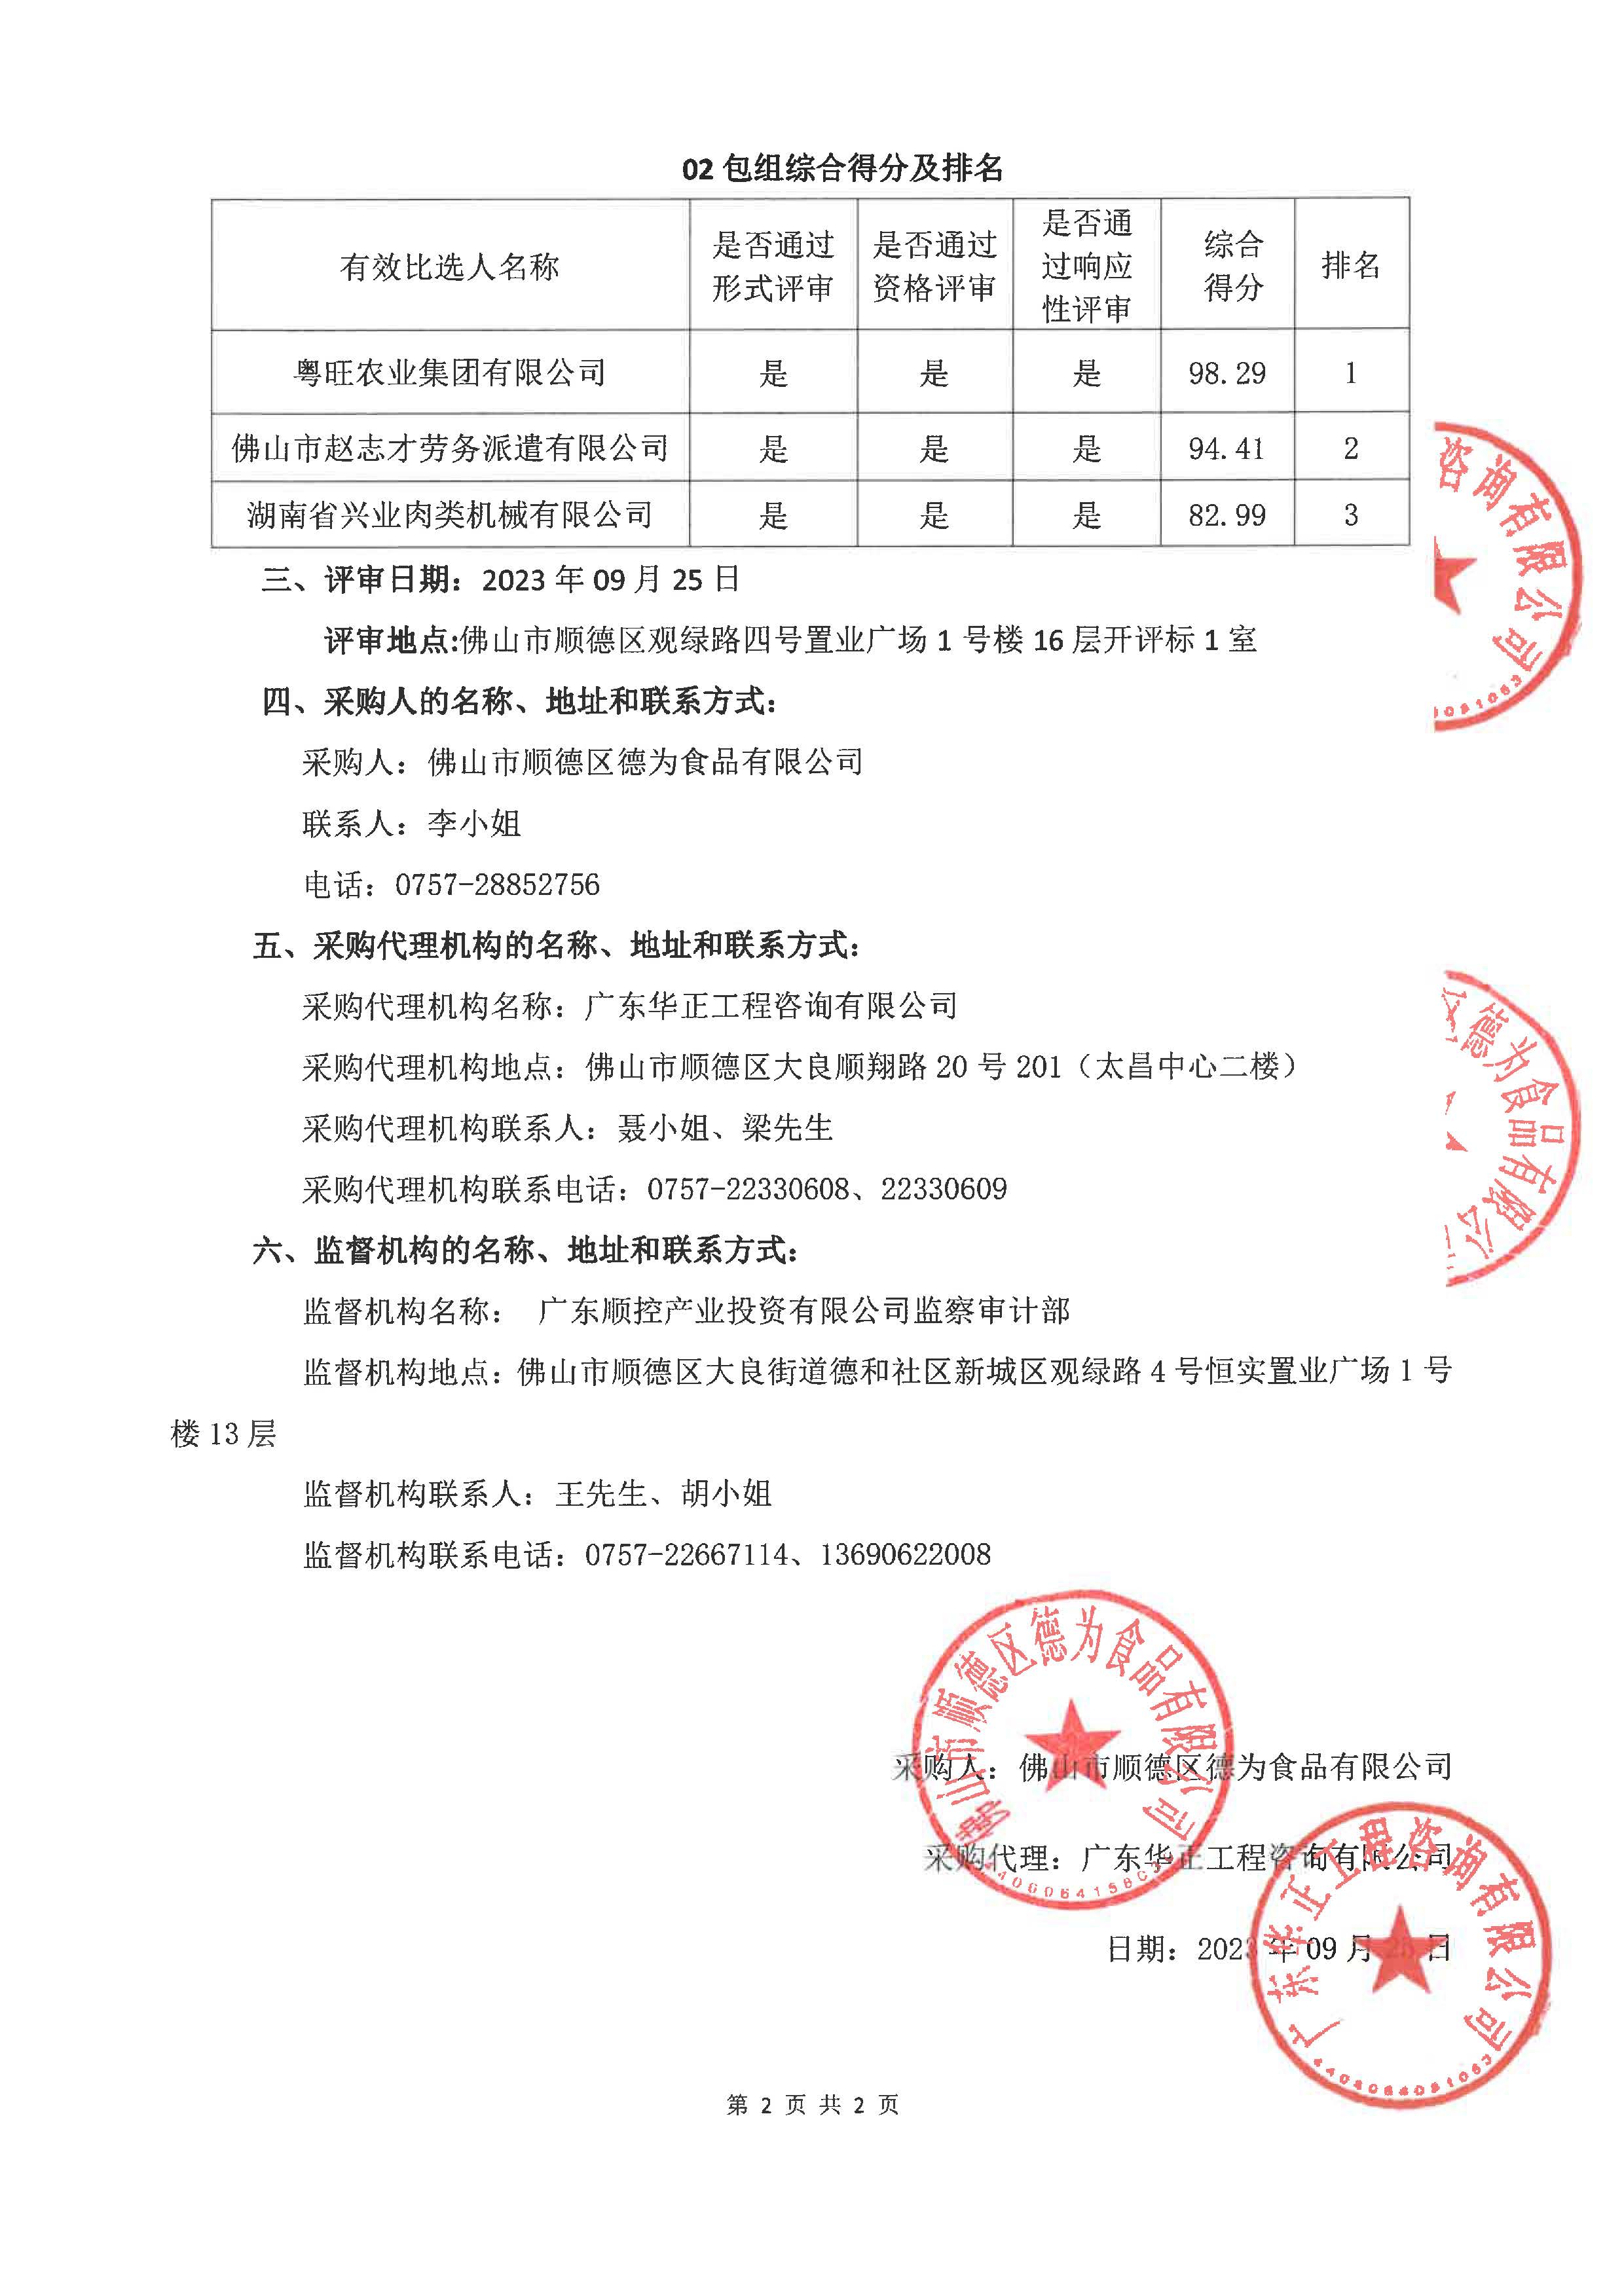 德為(wèi)公司生猪屠宰服務(wù)项目评标结果公示_页面_2.jpg